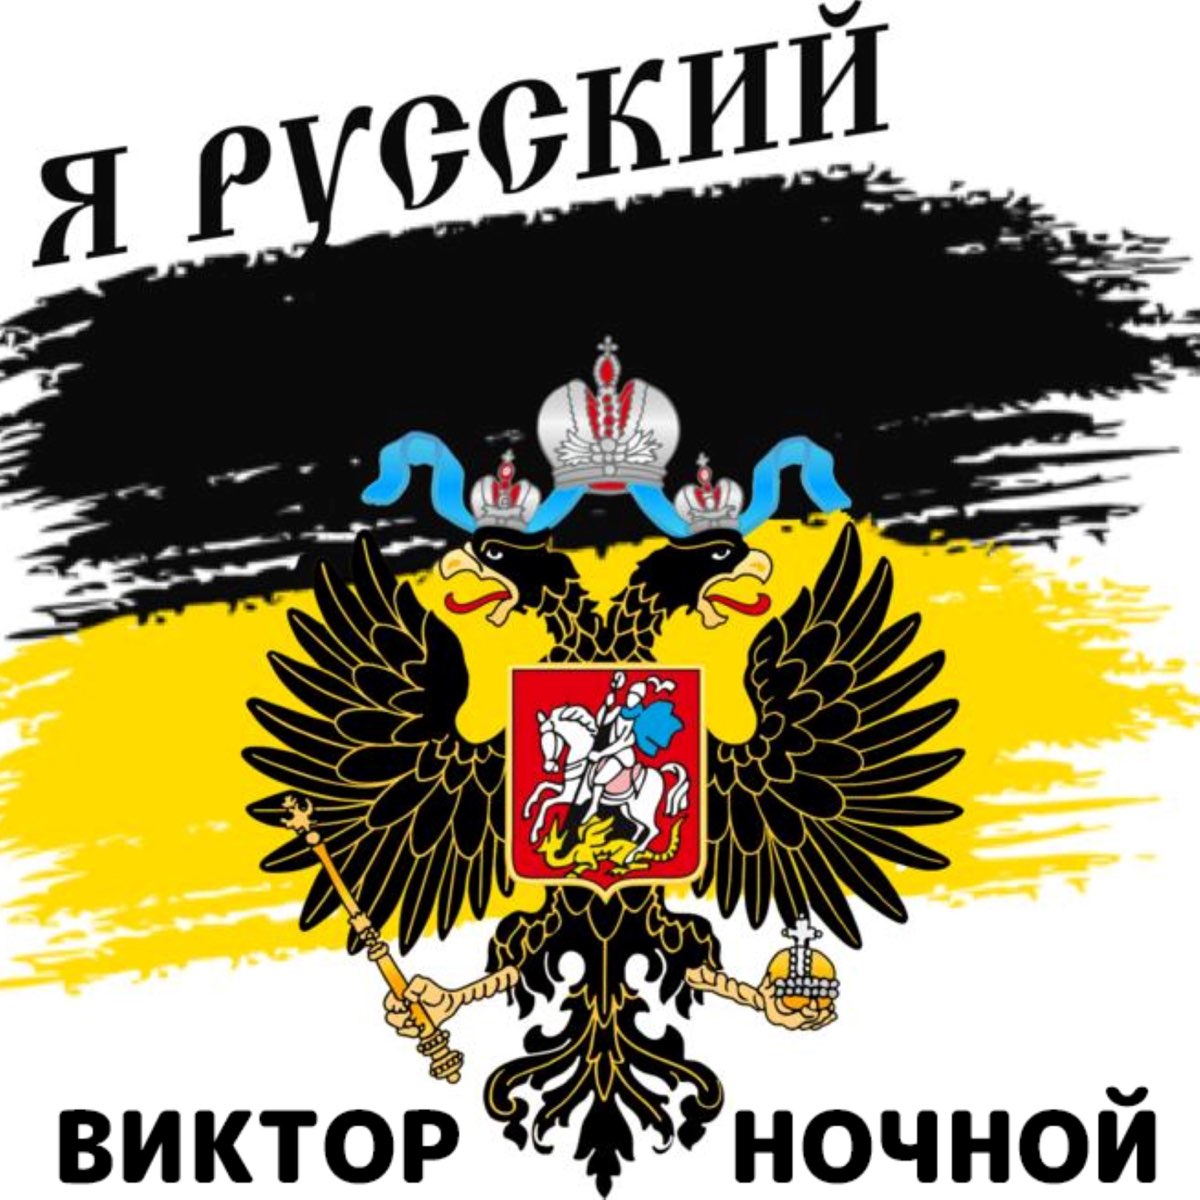 Я русский и был им всегда. Имперский флаг Российской империи я русский. Я русский. Надпись я русский. Россия для русских.